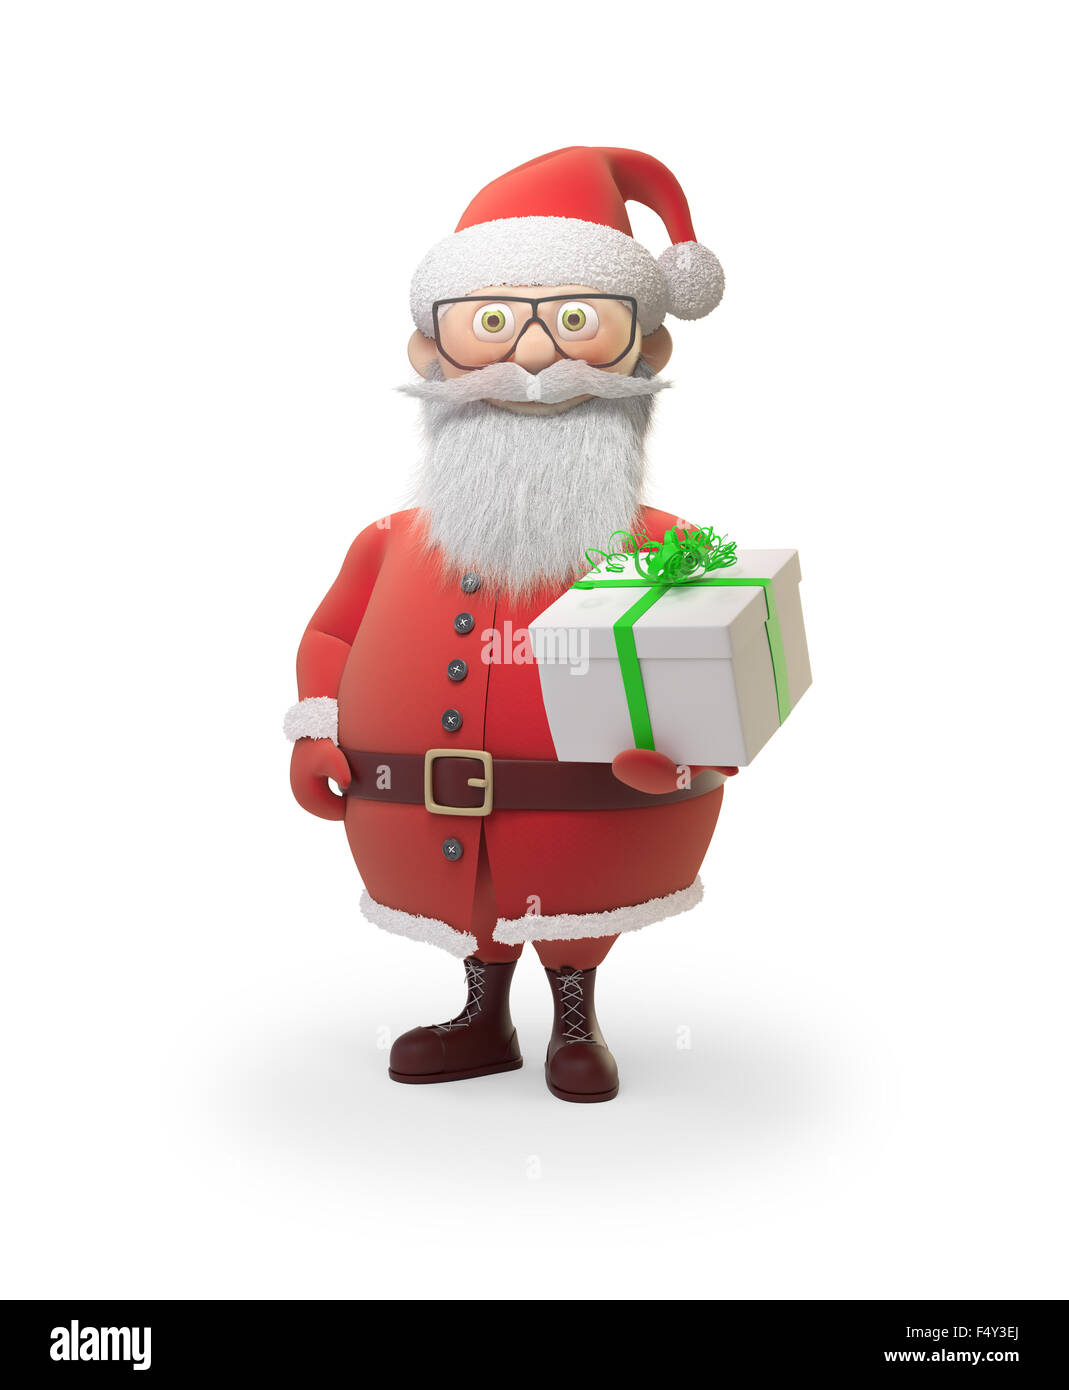 Santa Claus - caractère stylisé background illustration de Noël Banque D'Images